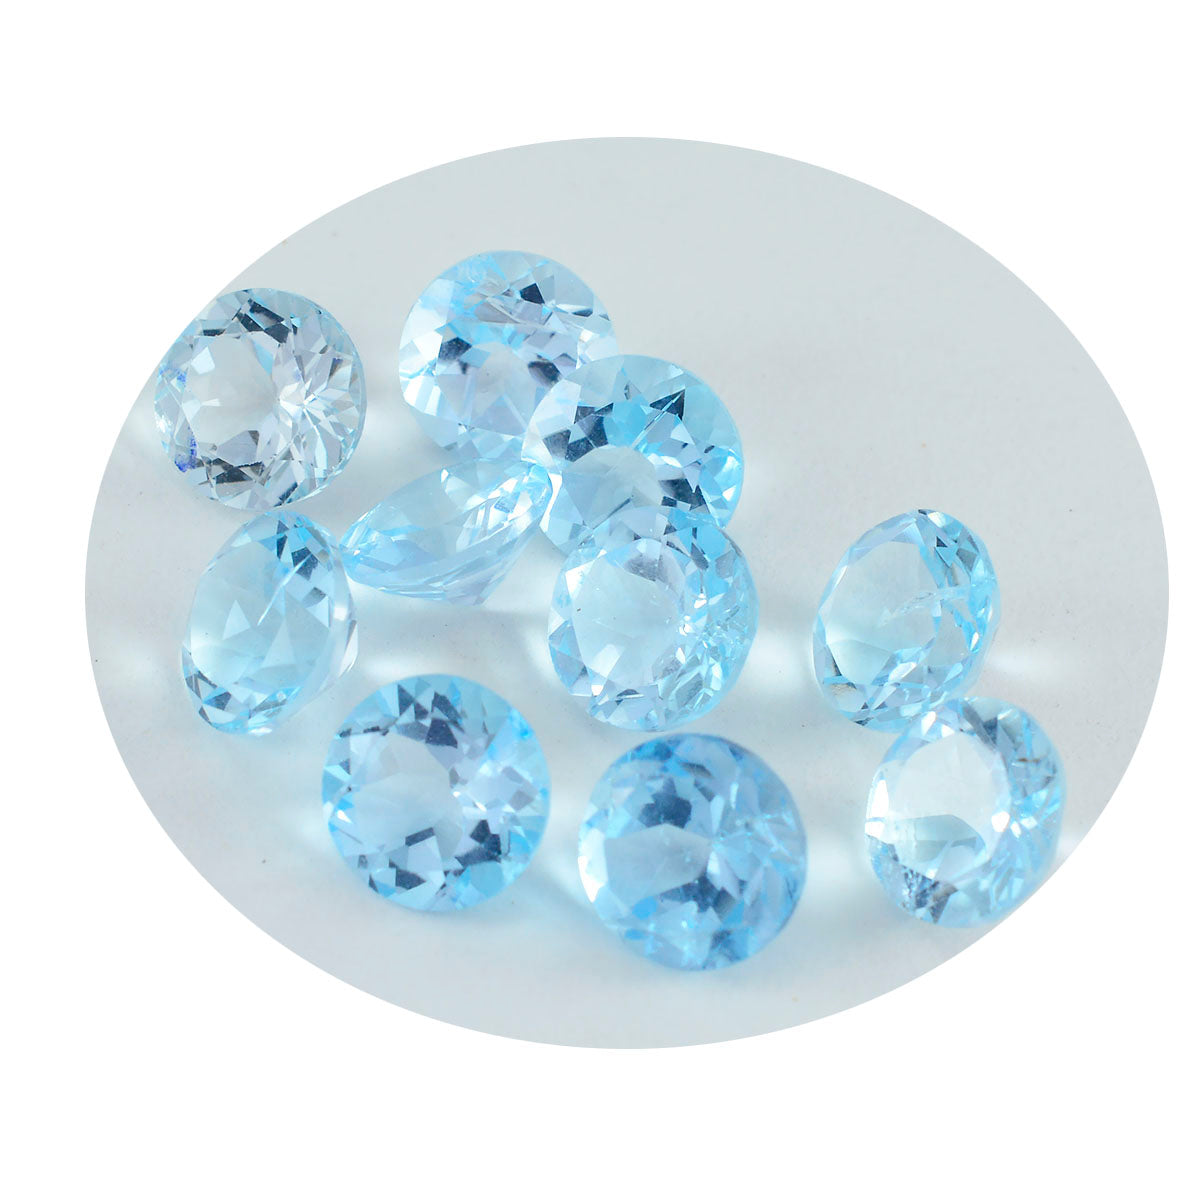 Riyogems 1 pièce de topaze bleue naturelle à facettes 4x4mm, forme ronde, pierres précieuses en vrac de qualité douce